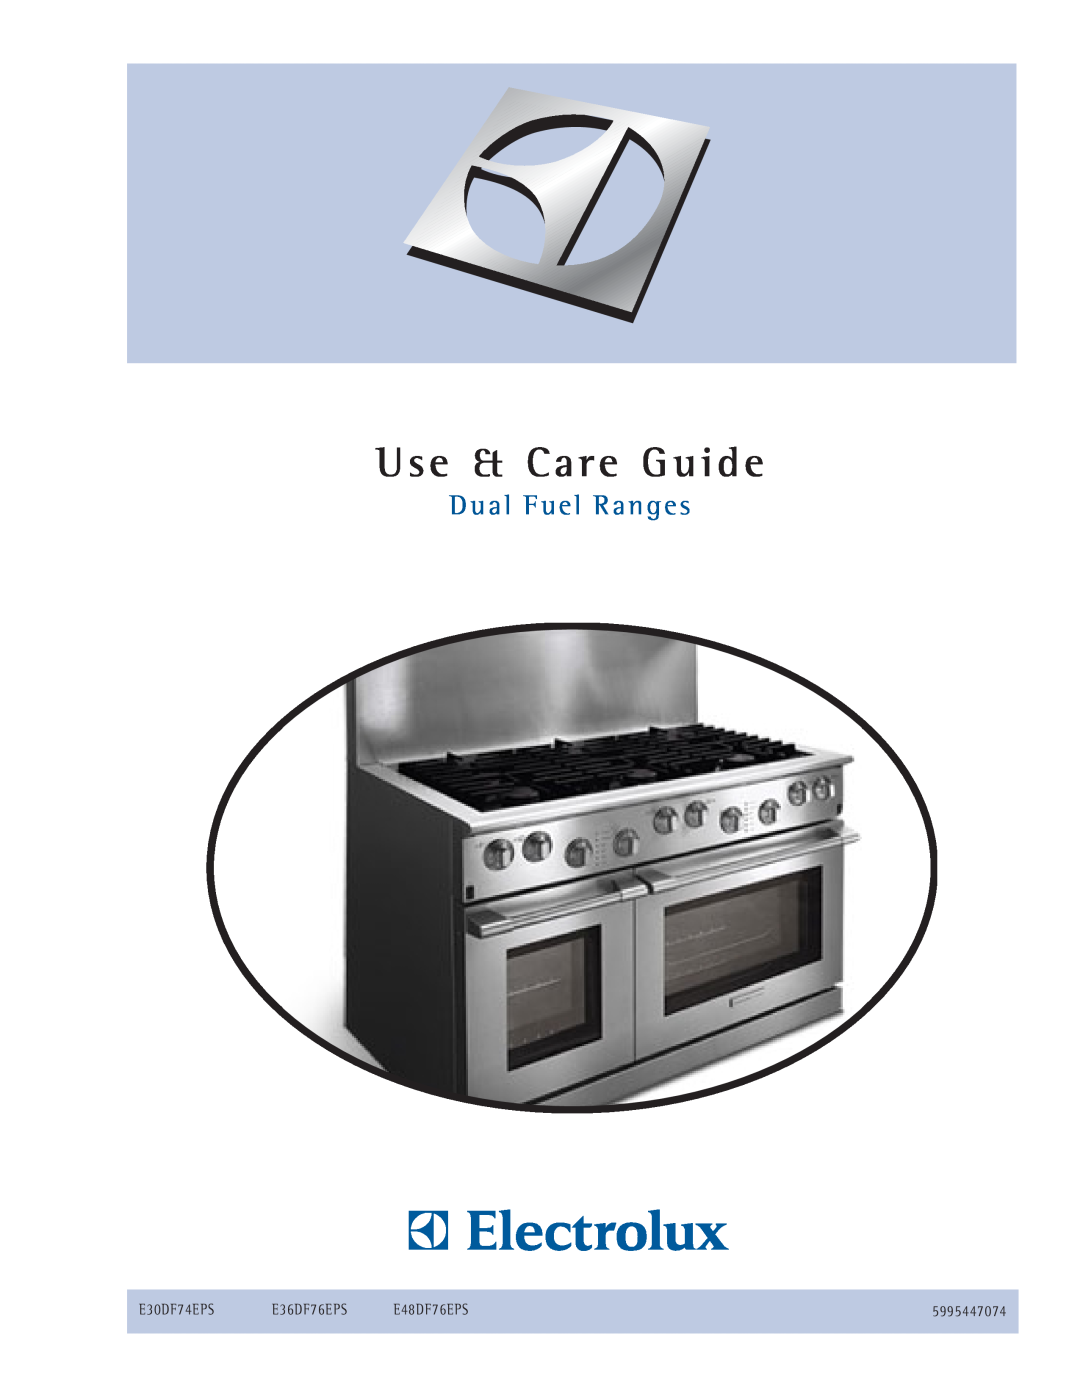 Electrolux E30DF74EPS manual Use & Care Guide, D u a l F u e l R a n g e s, E36DF76EPS, E48DF76EPS, 5995447074 